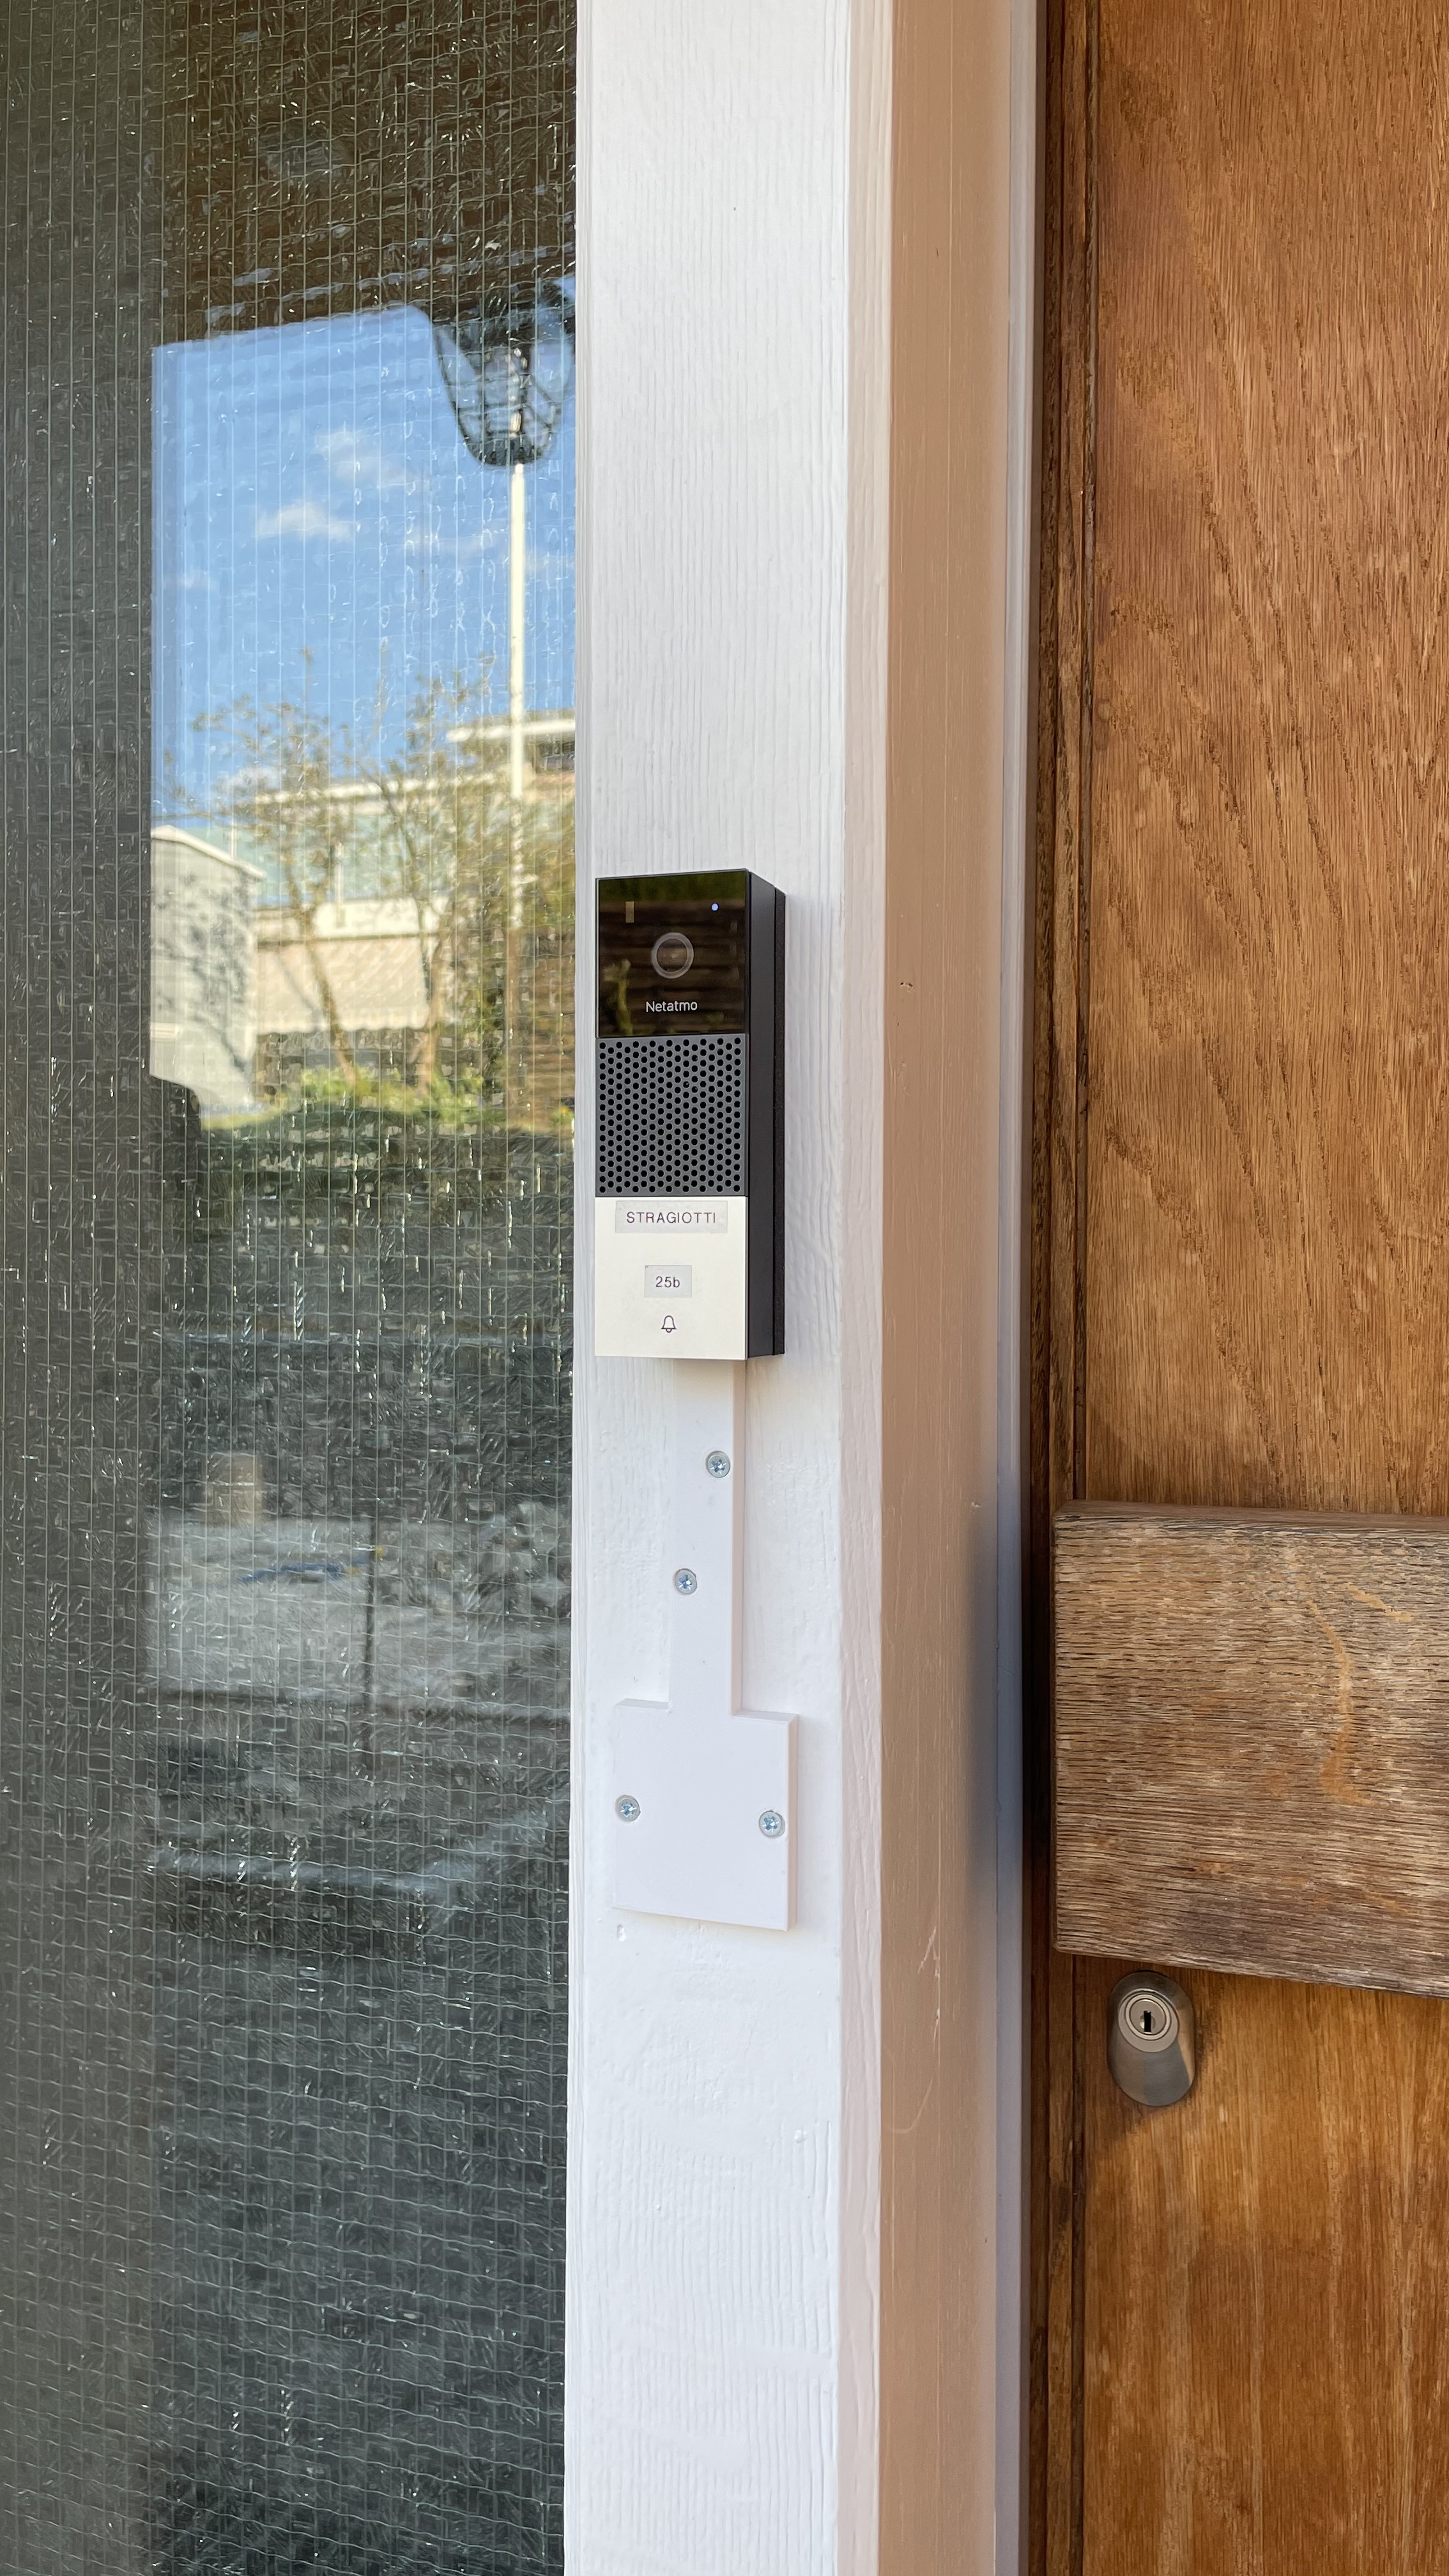 Netatmo smart video doorbell mount + cover for wires